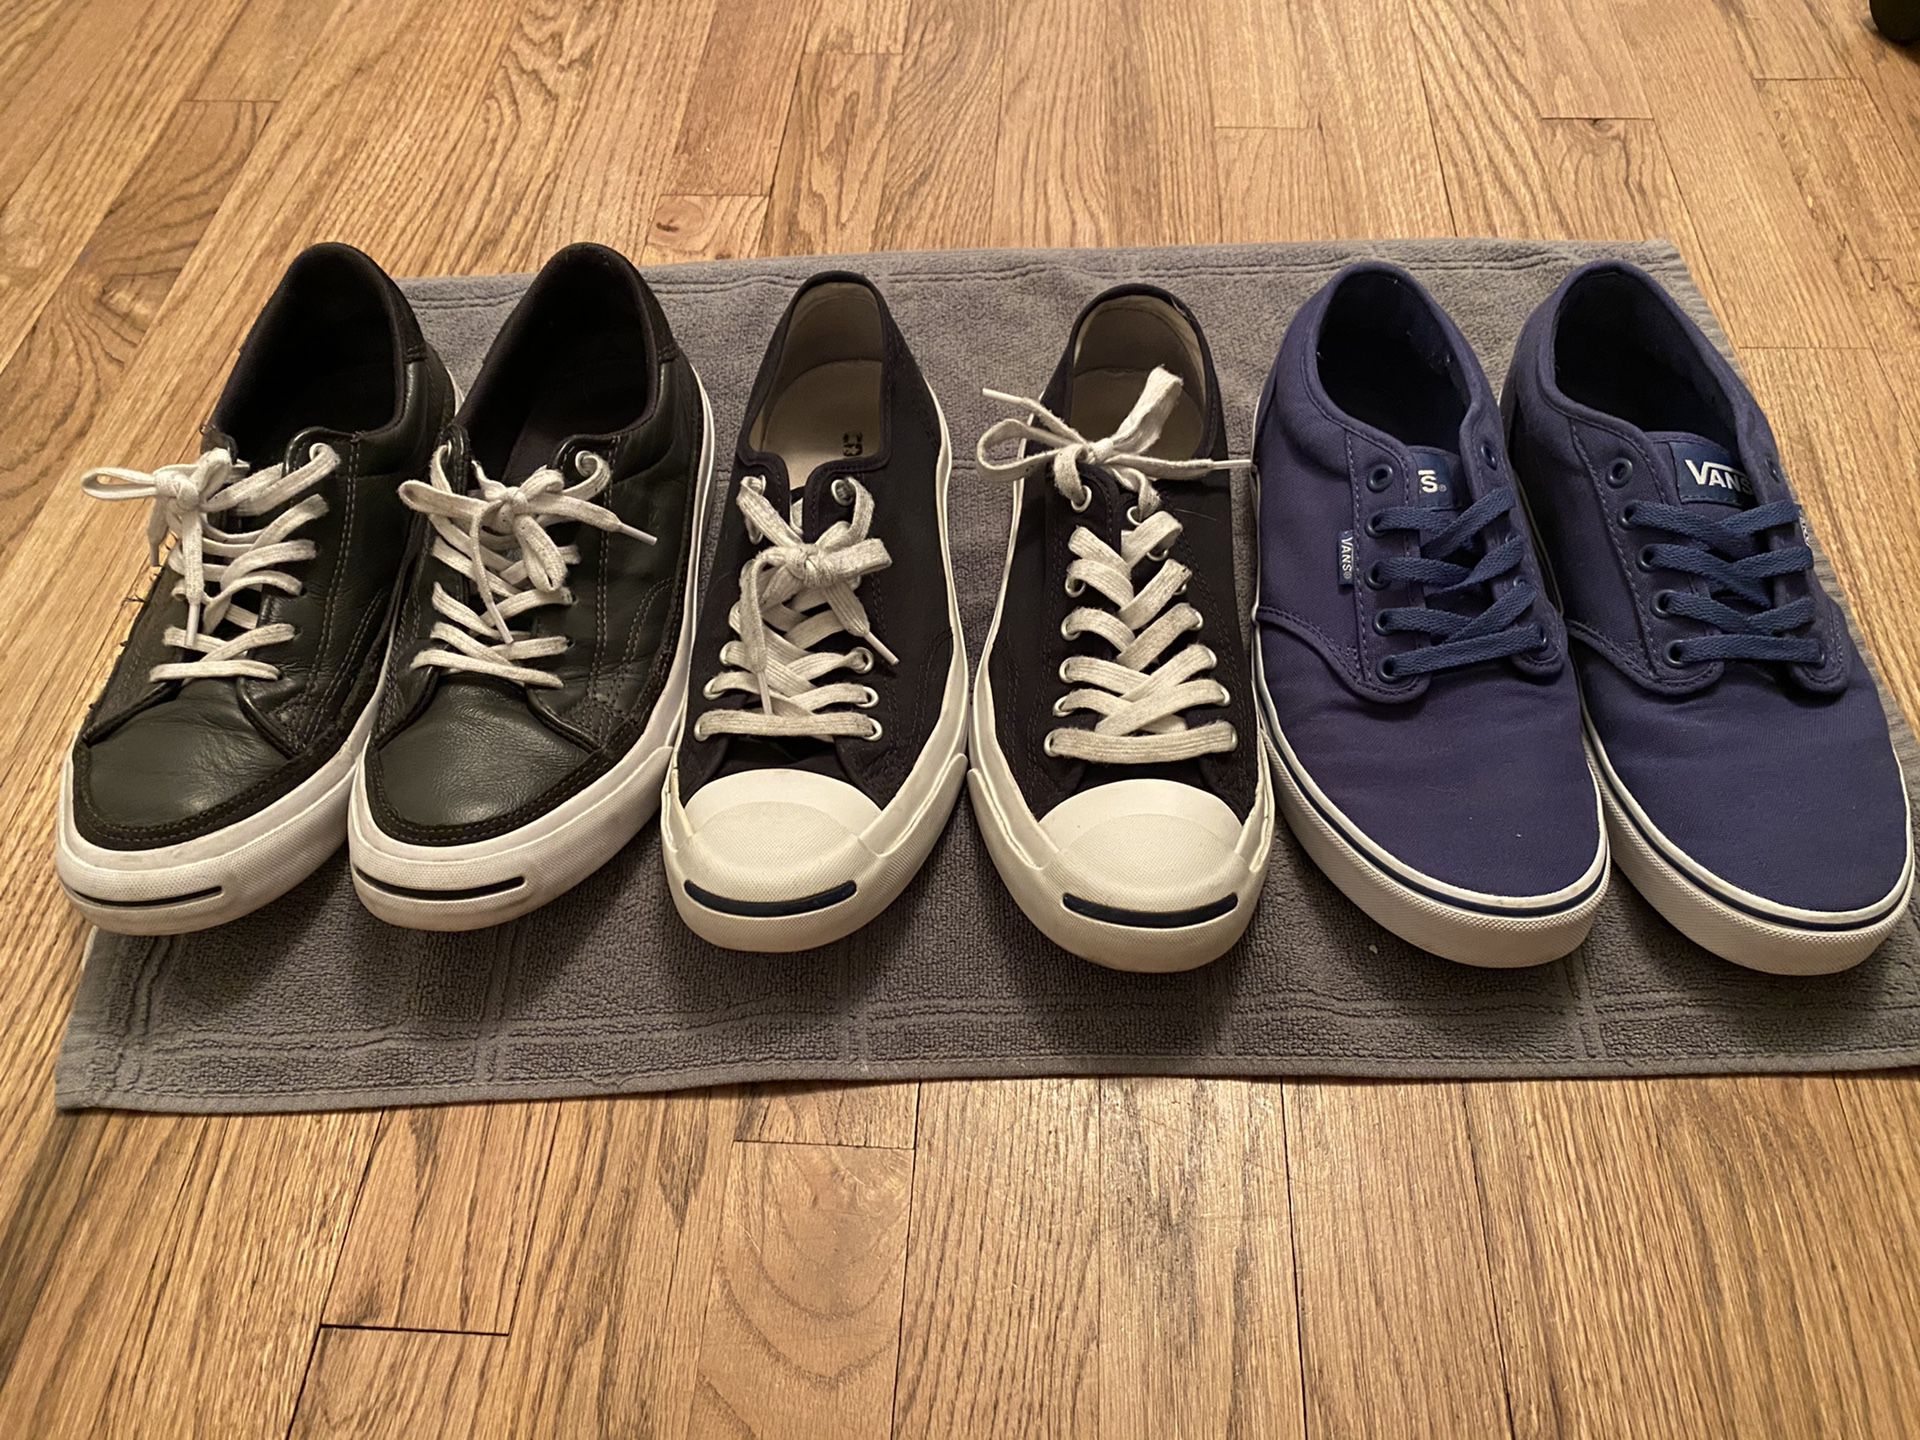 Vans and Converse Men’s Shoes Size 9